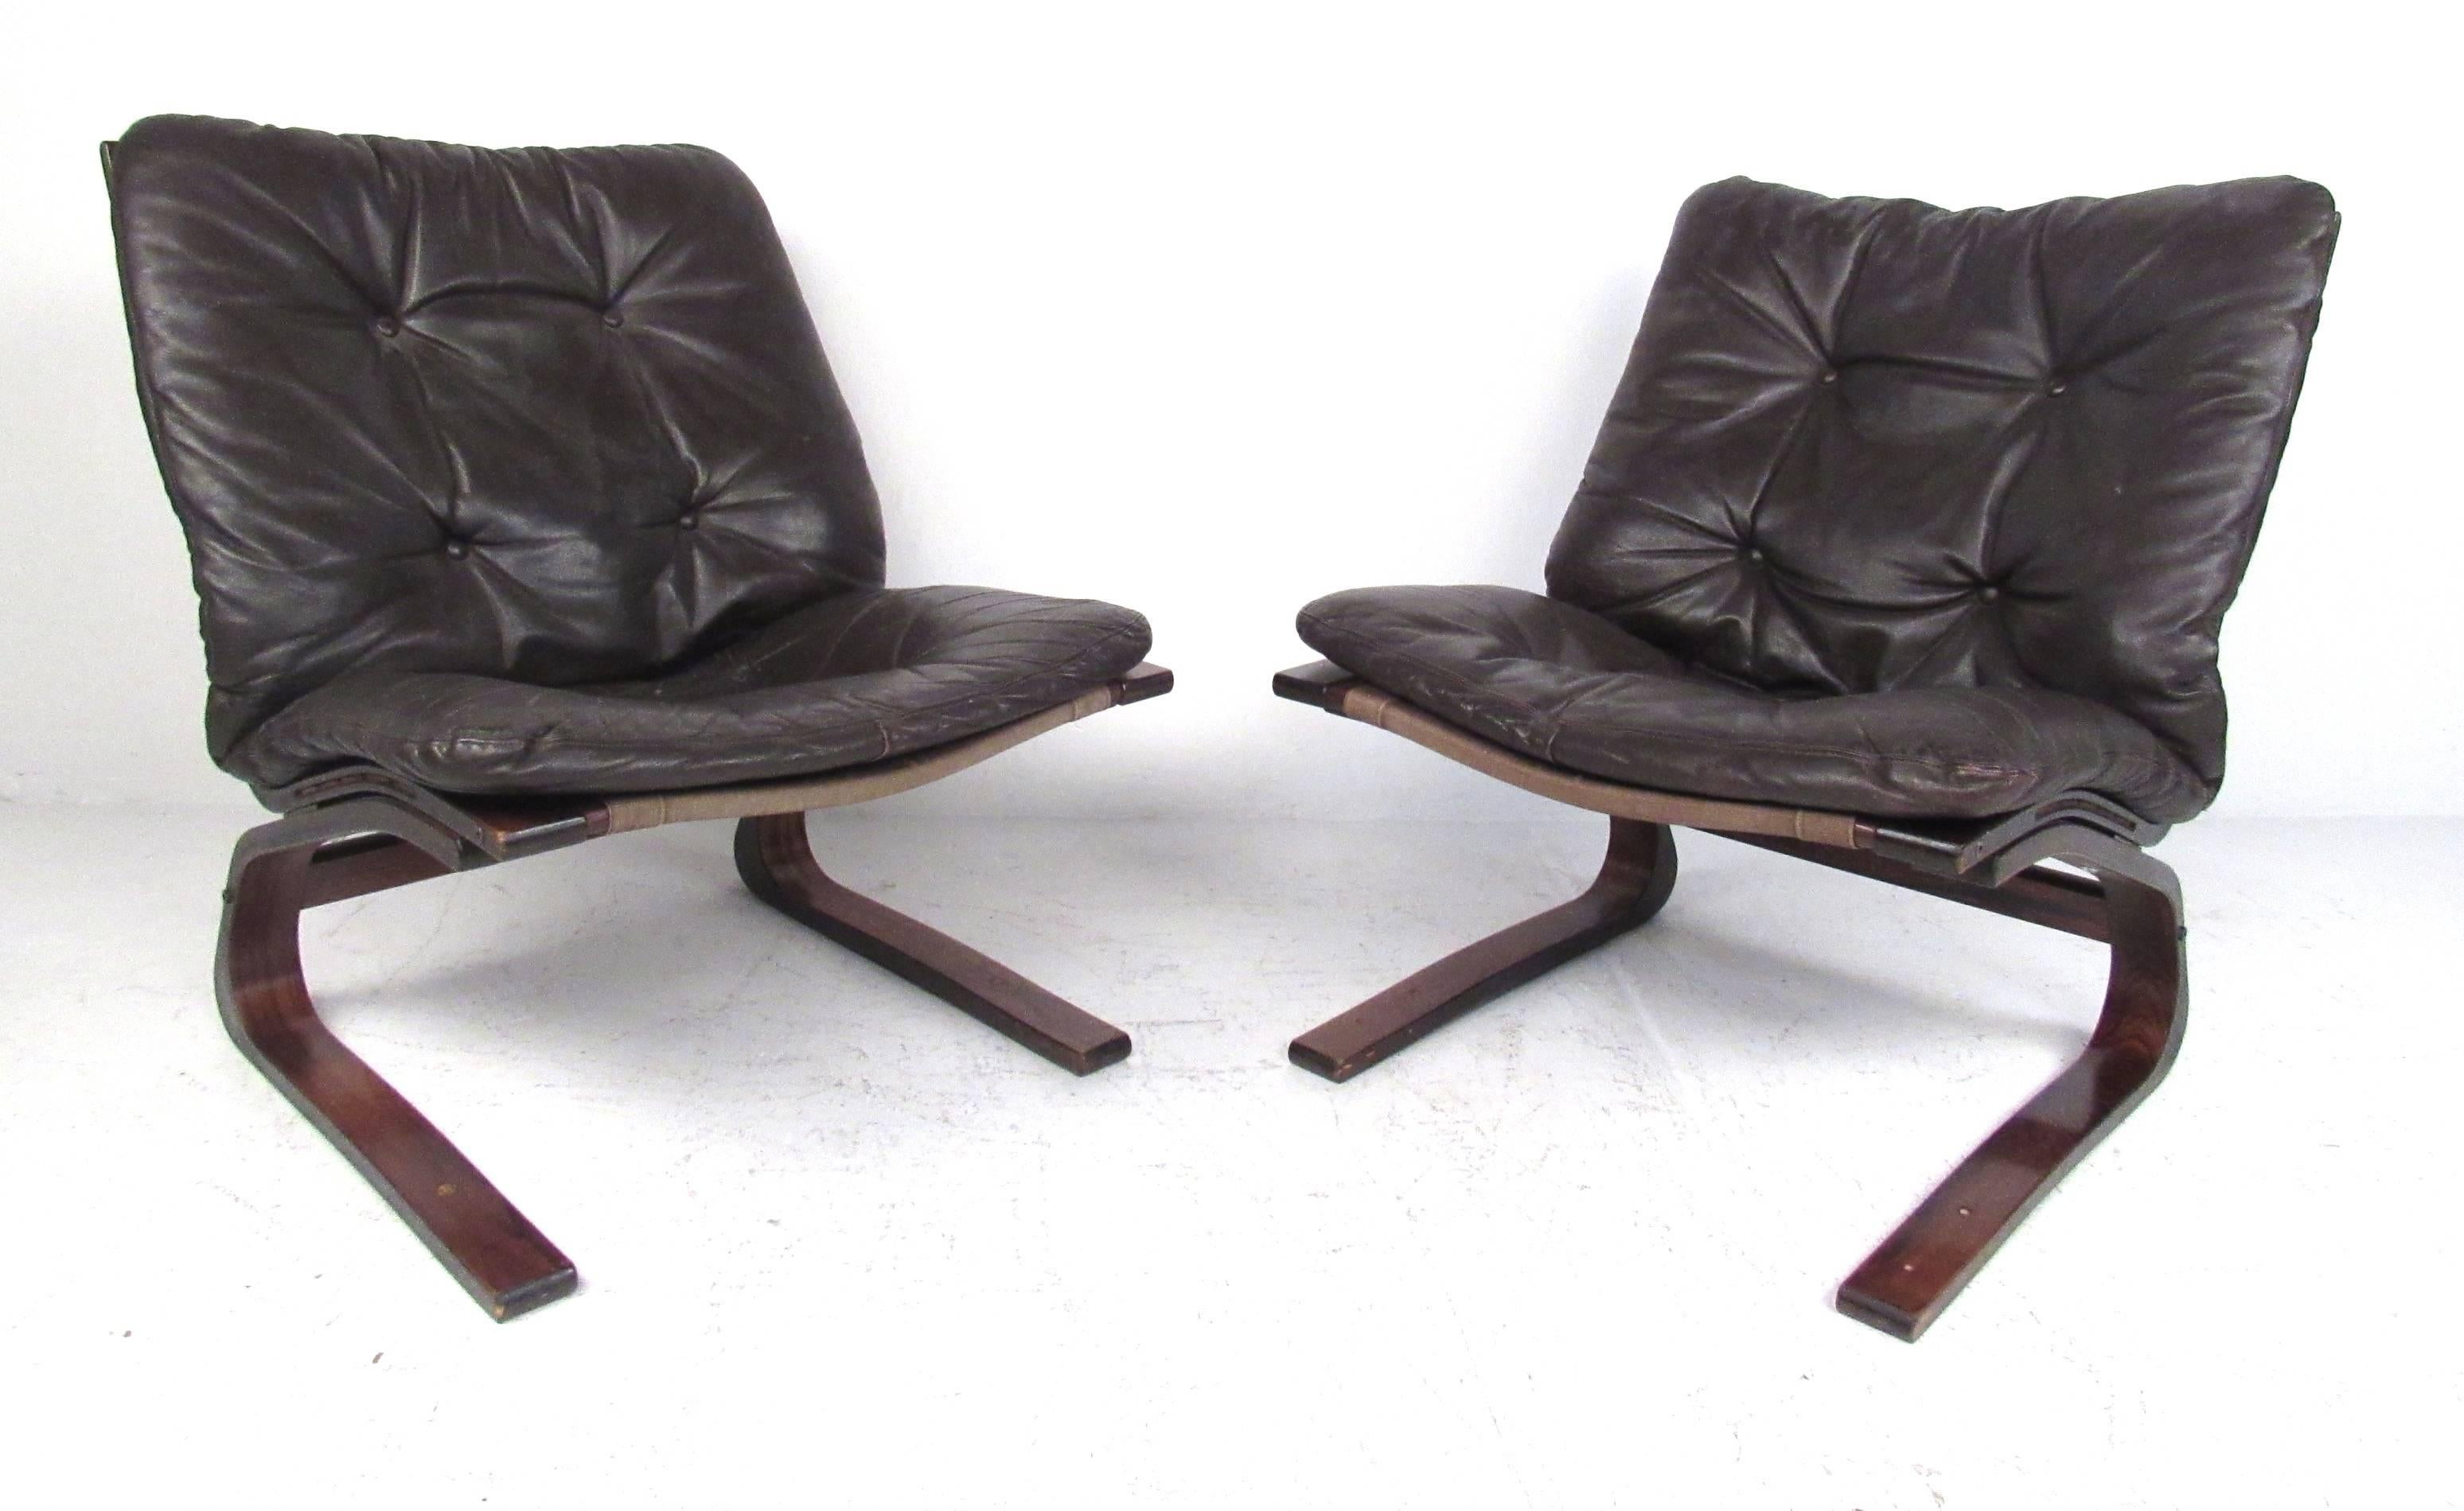 Chaises de sieste Westnofa modernes et danoises avec des cadres en contreplaqué courbé et un revêtement en cuir marron foncé. Veuillez confirmer la localisation de l'article (NY ou NJ) auprès du revendeur.